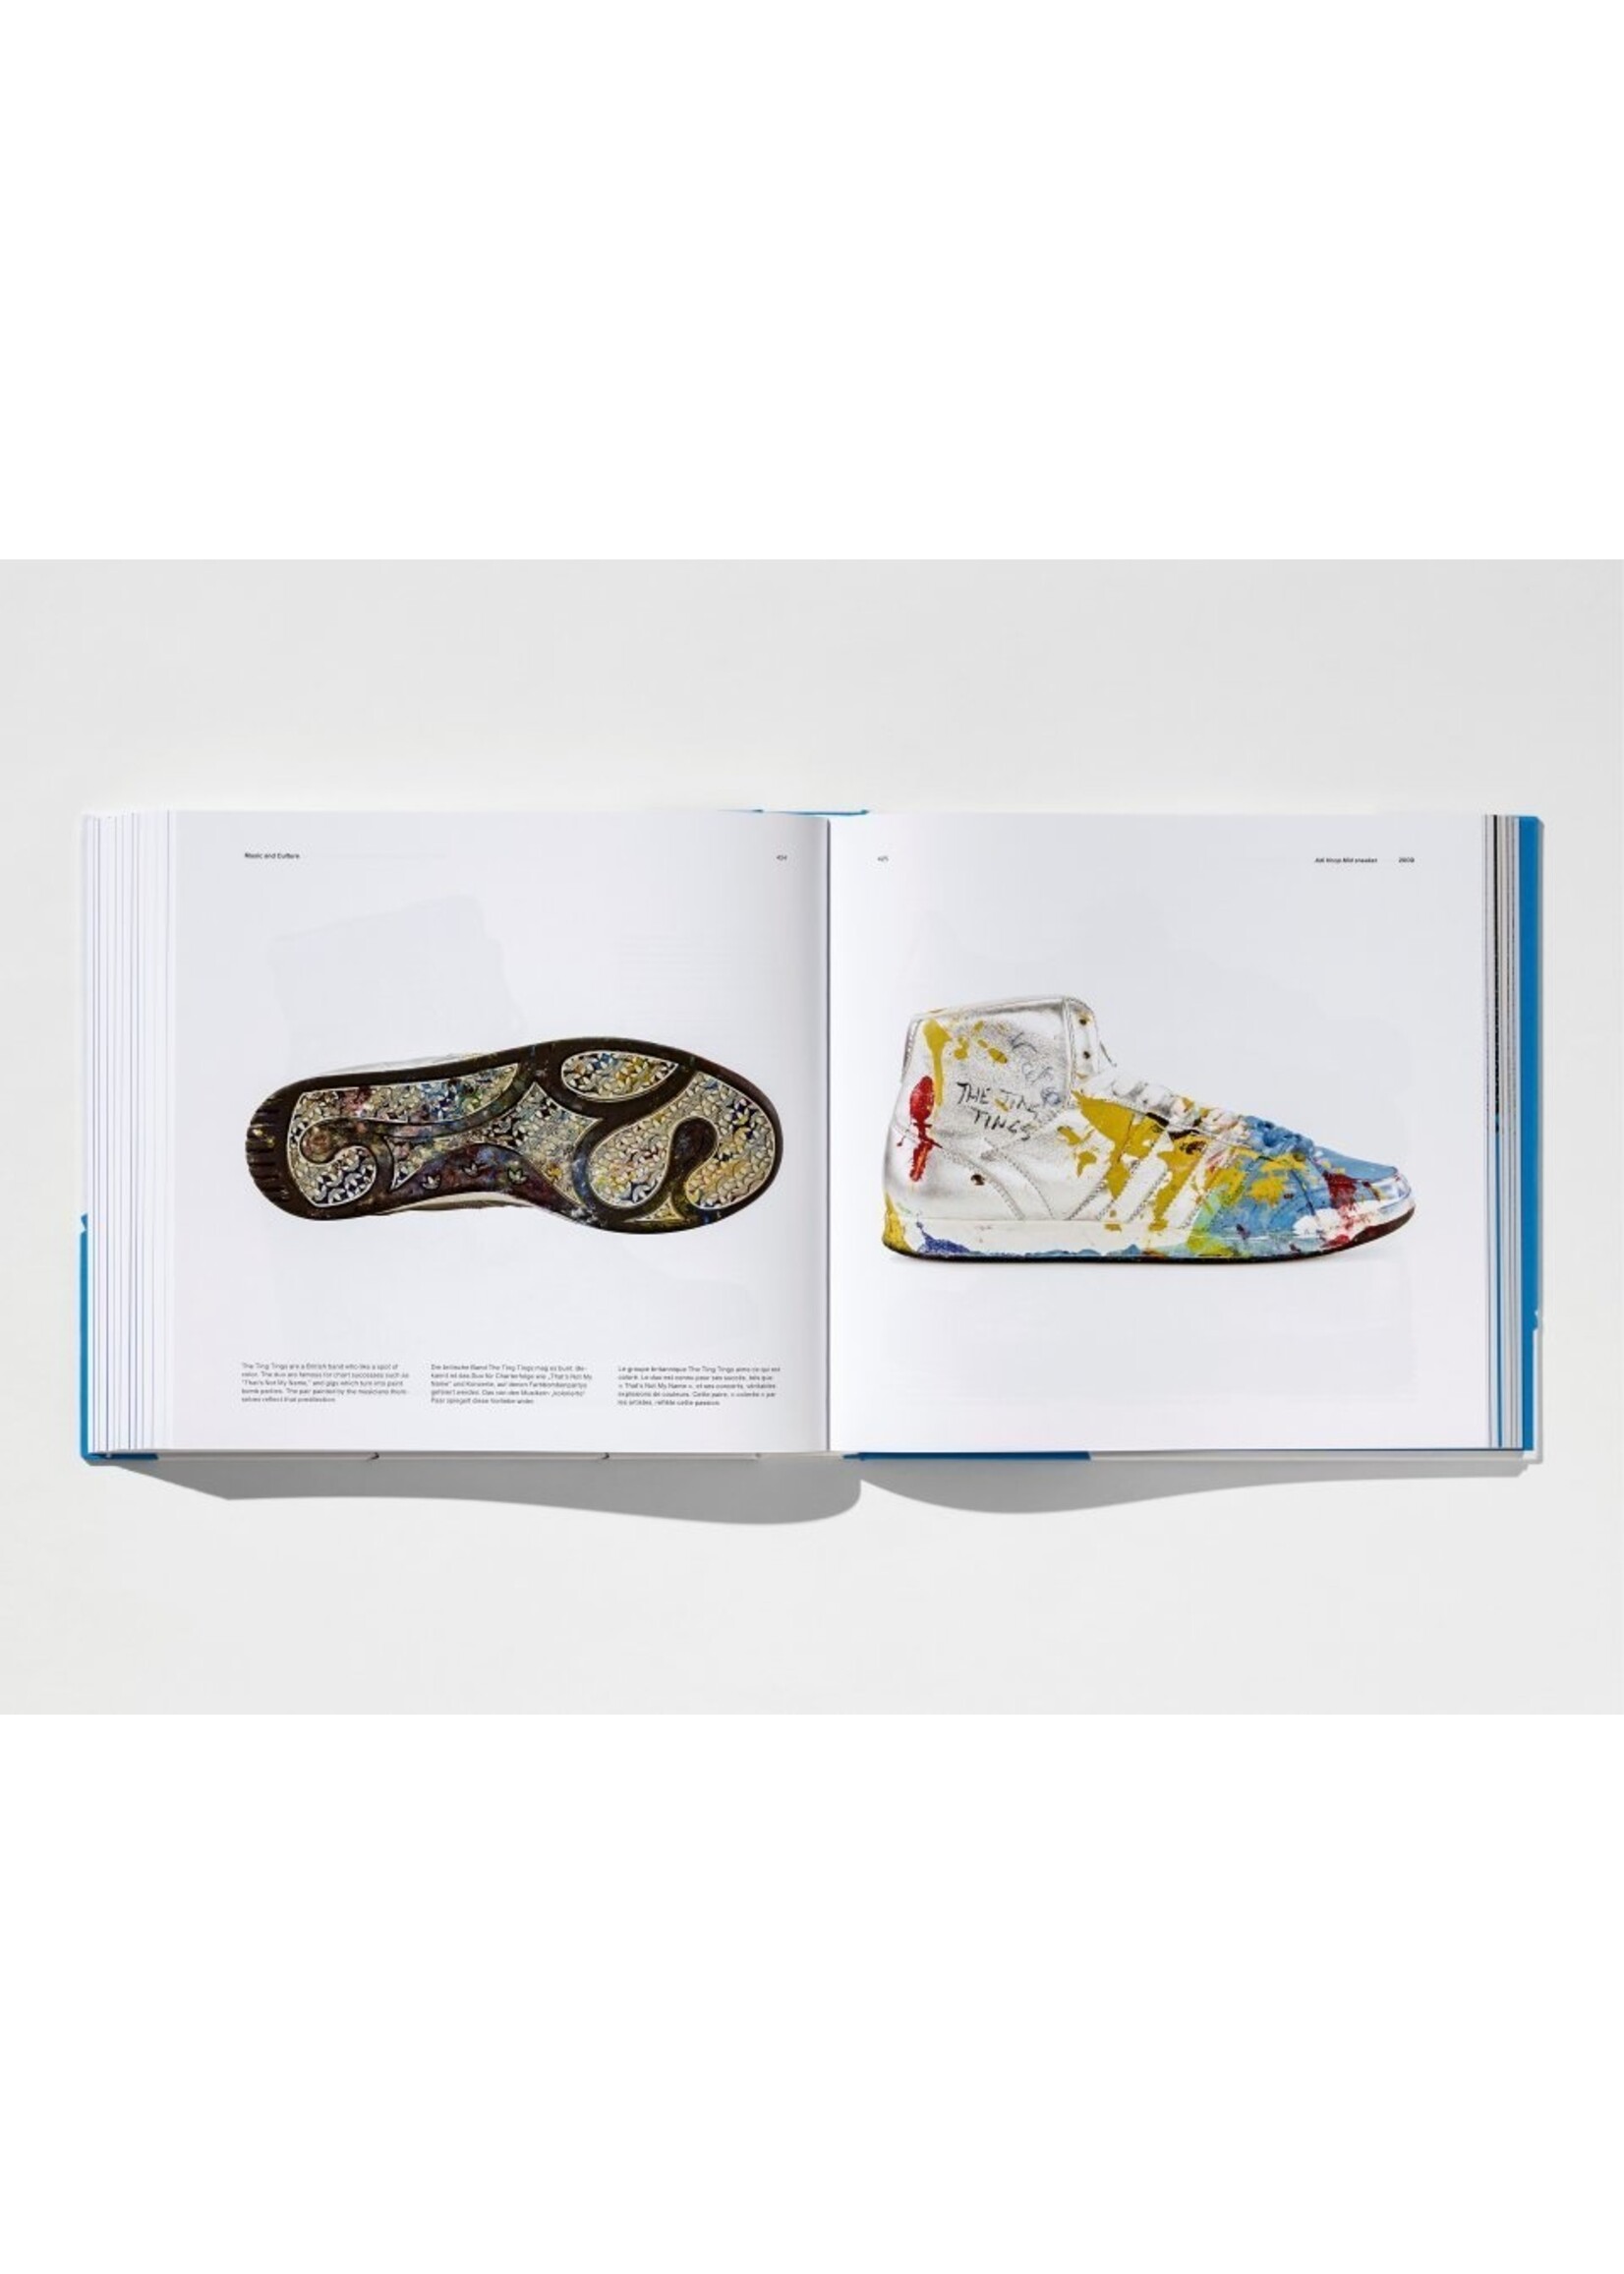 TASCHEN TASCHEN - The adidas Archive - The Footwear Collection